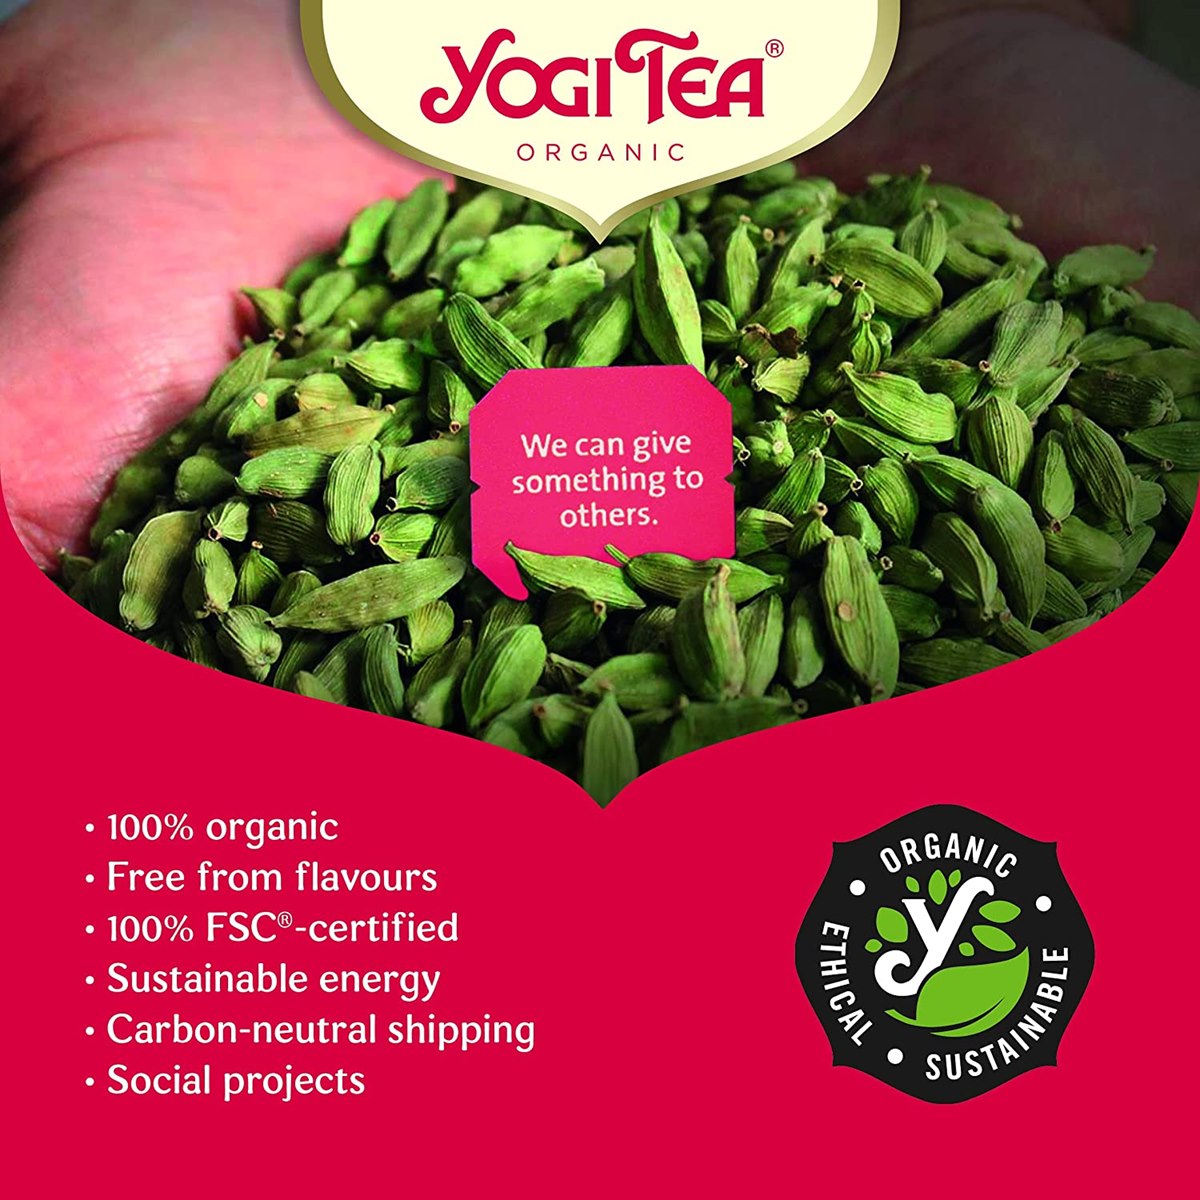 Where to Buy Yogi Organic Tea